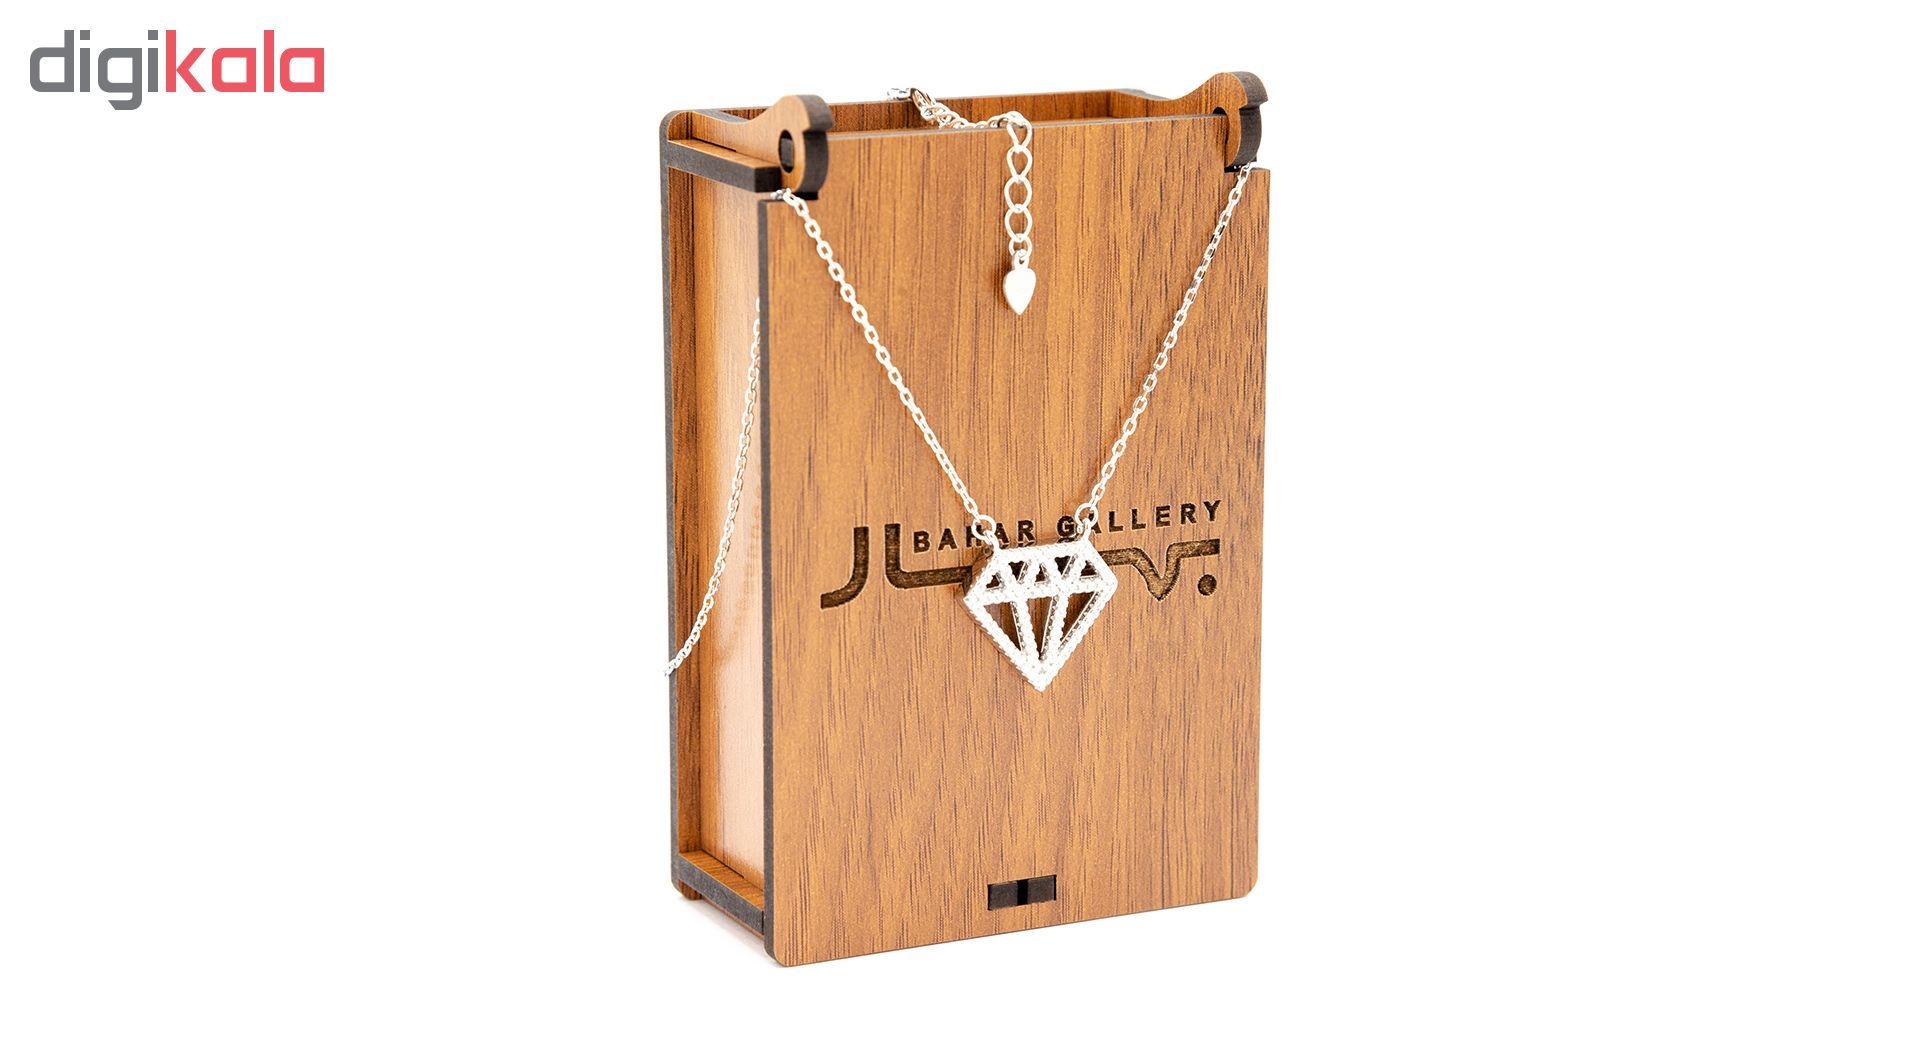 گردنبند نقره بهارگالری طرح الماس مدل Luxury Diamond